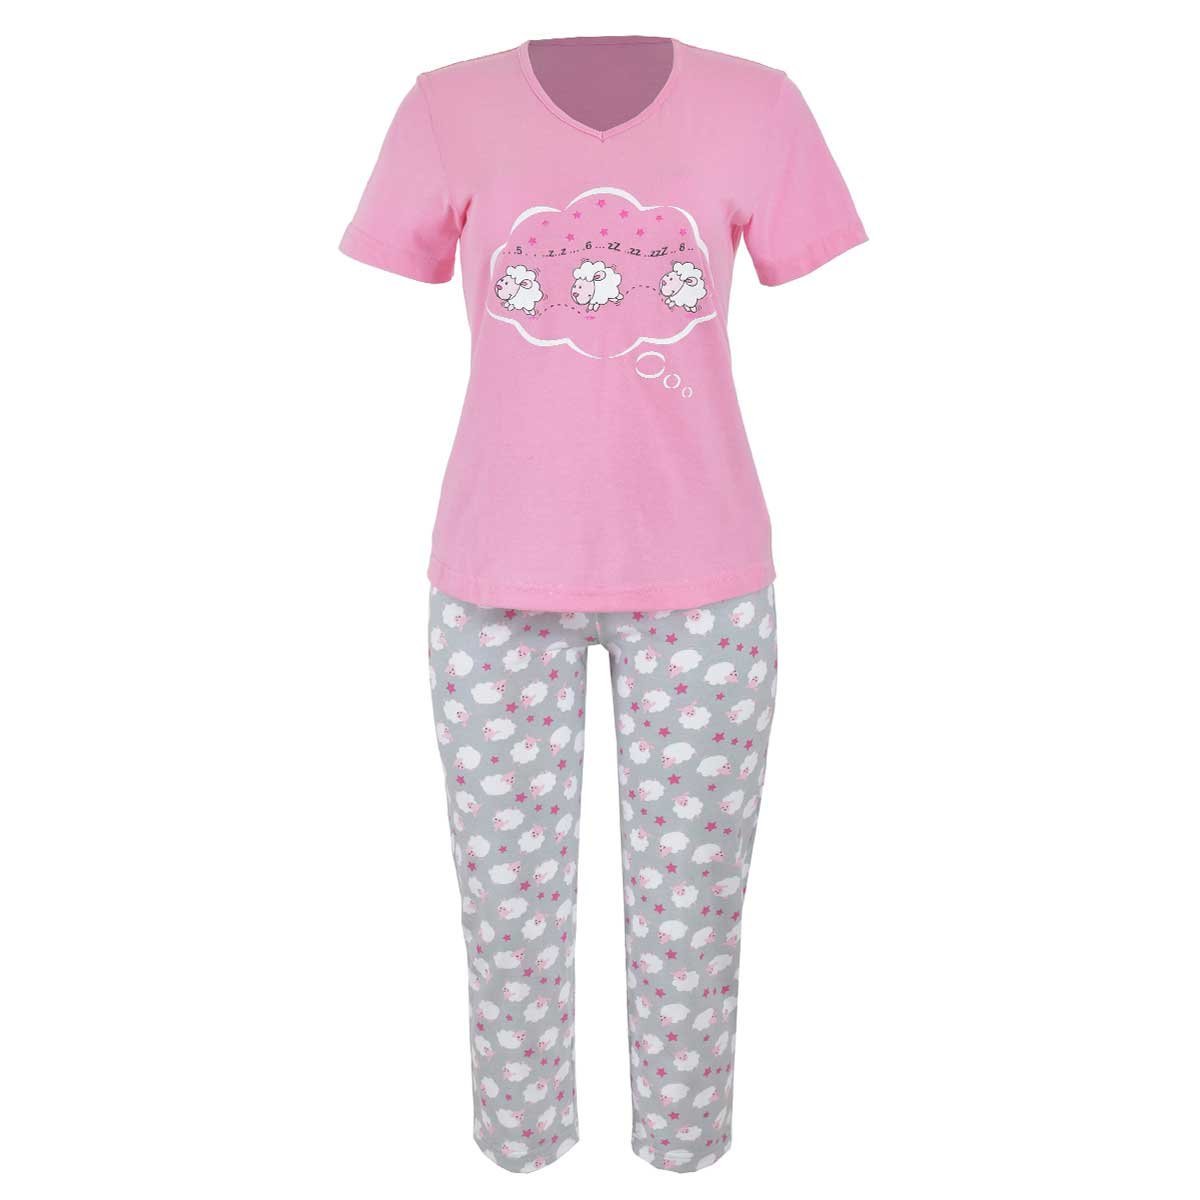 Pijama para Dama Chifon Playera Y Capri Estampado Borregos Isotoner